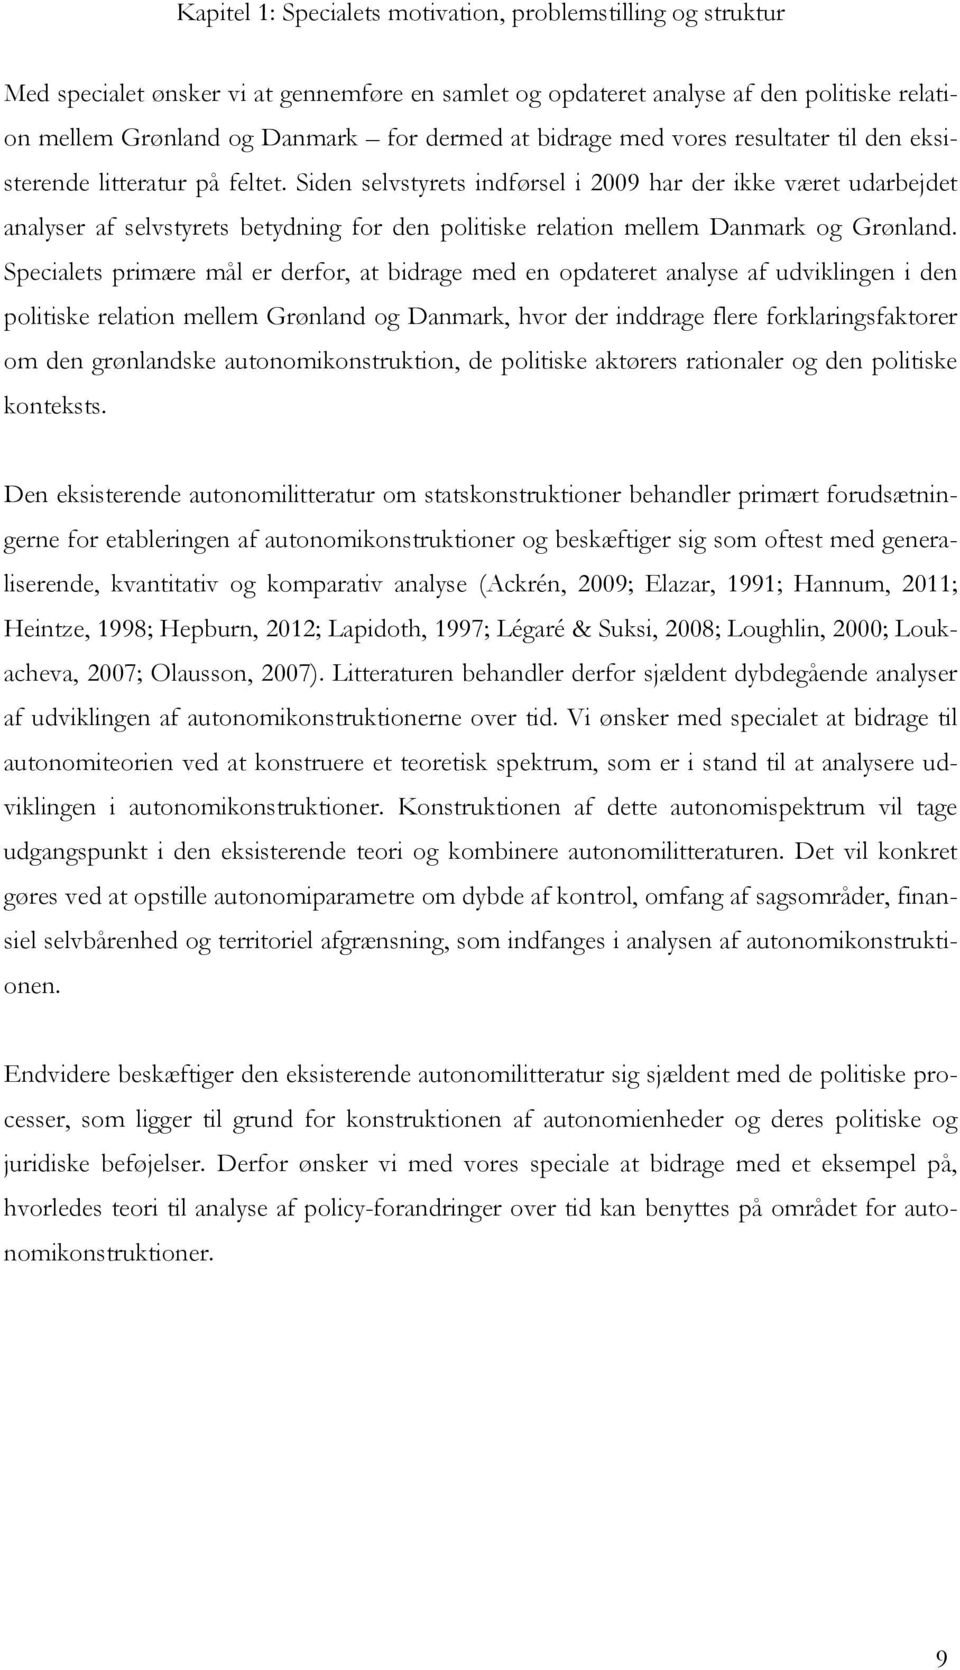 Siden selvstyrets indførsel i 2009 har der ikke været udarbejdet analyser af selvstyrets betydning for den politiske relation mellem Danmark og Grønland.